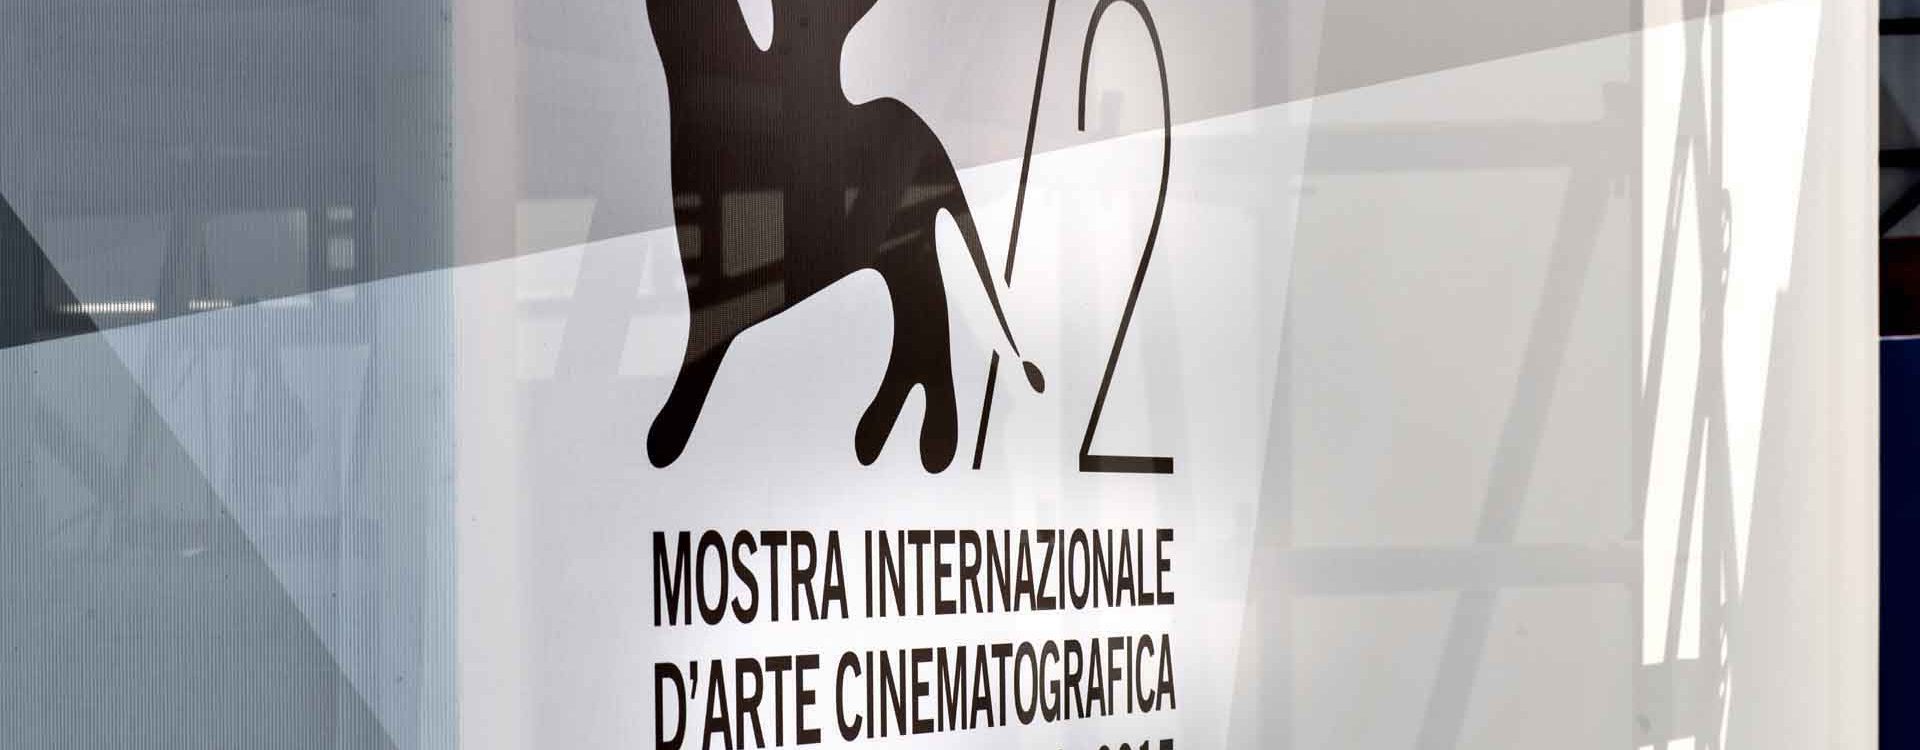 Chiara Rapaccini Mario Monicelli 72 Mostra Internazionale d’ Arte Cinematografica – La Biennale di venezia 2015 00011